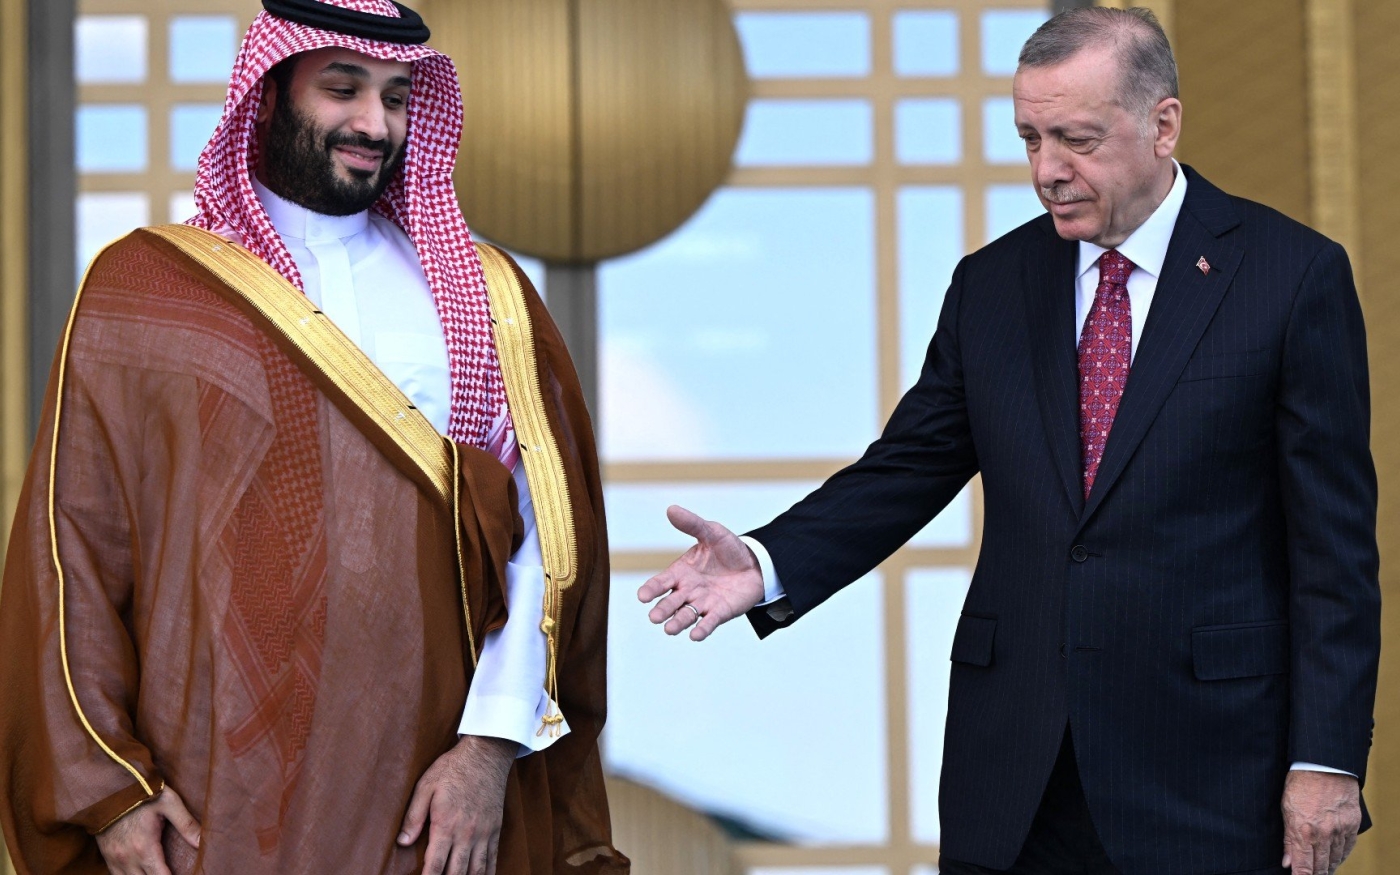 Le président turc Recep Tayyip Erdoğan (à droite) accueille le prince héritier saoudien Mohammed ben Salmane (à gauche) à son arrivée à Ankara, le 22 juin 2022 (AFP)